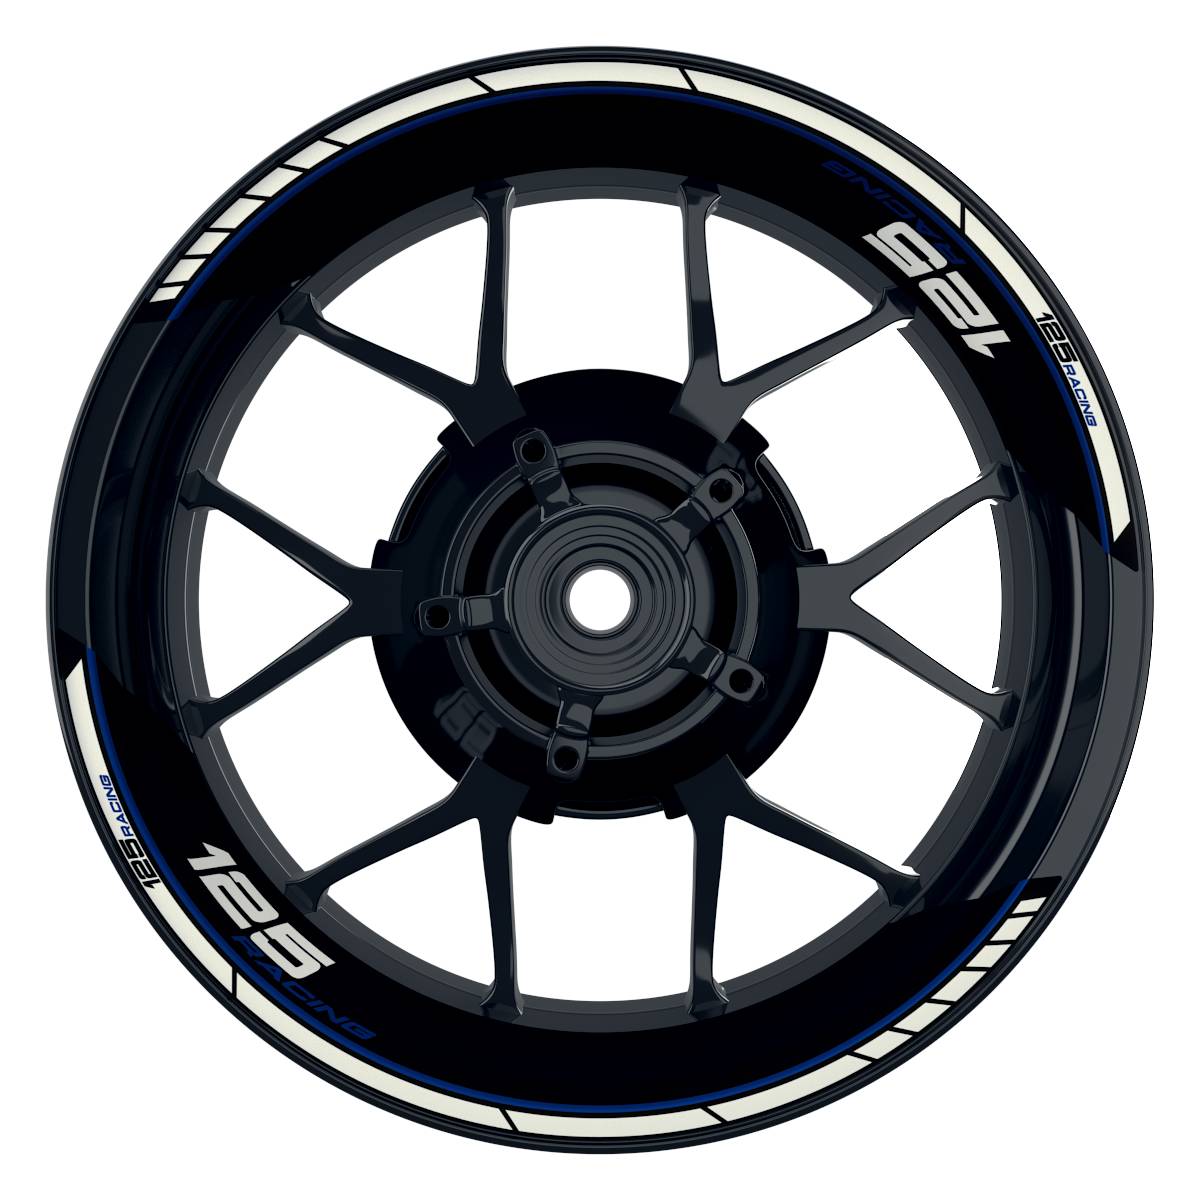 KTM Racing 125 Clean schwarz blau Frontansicht